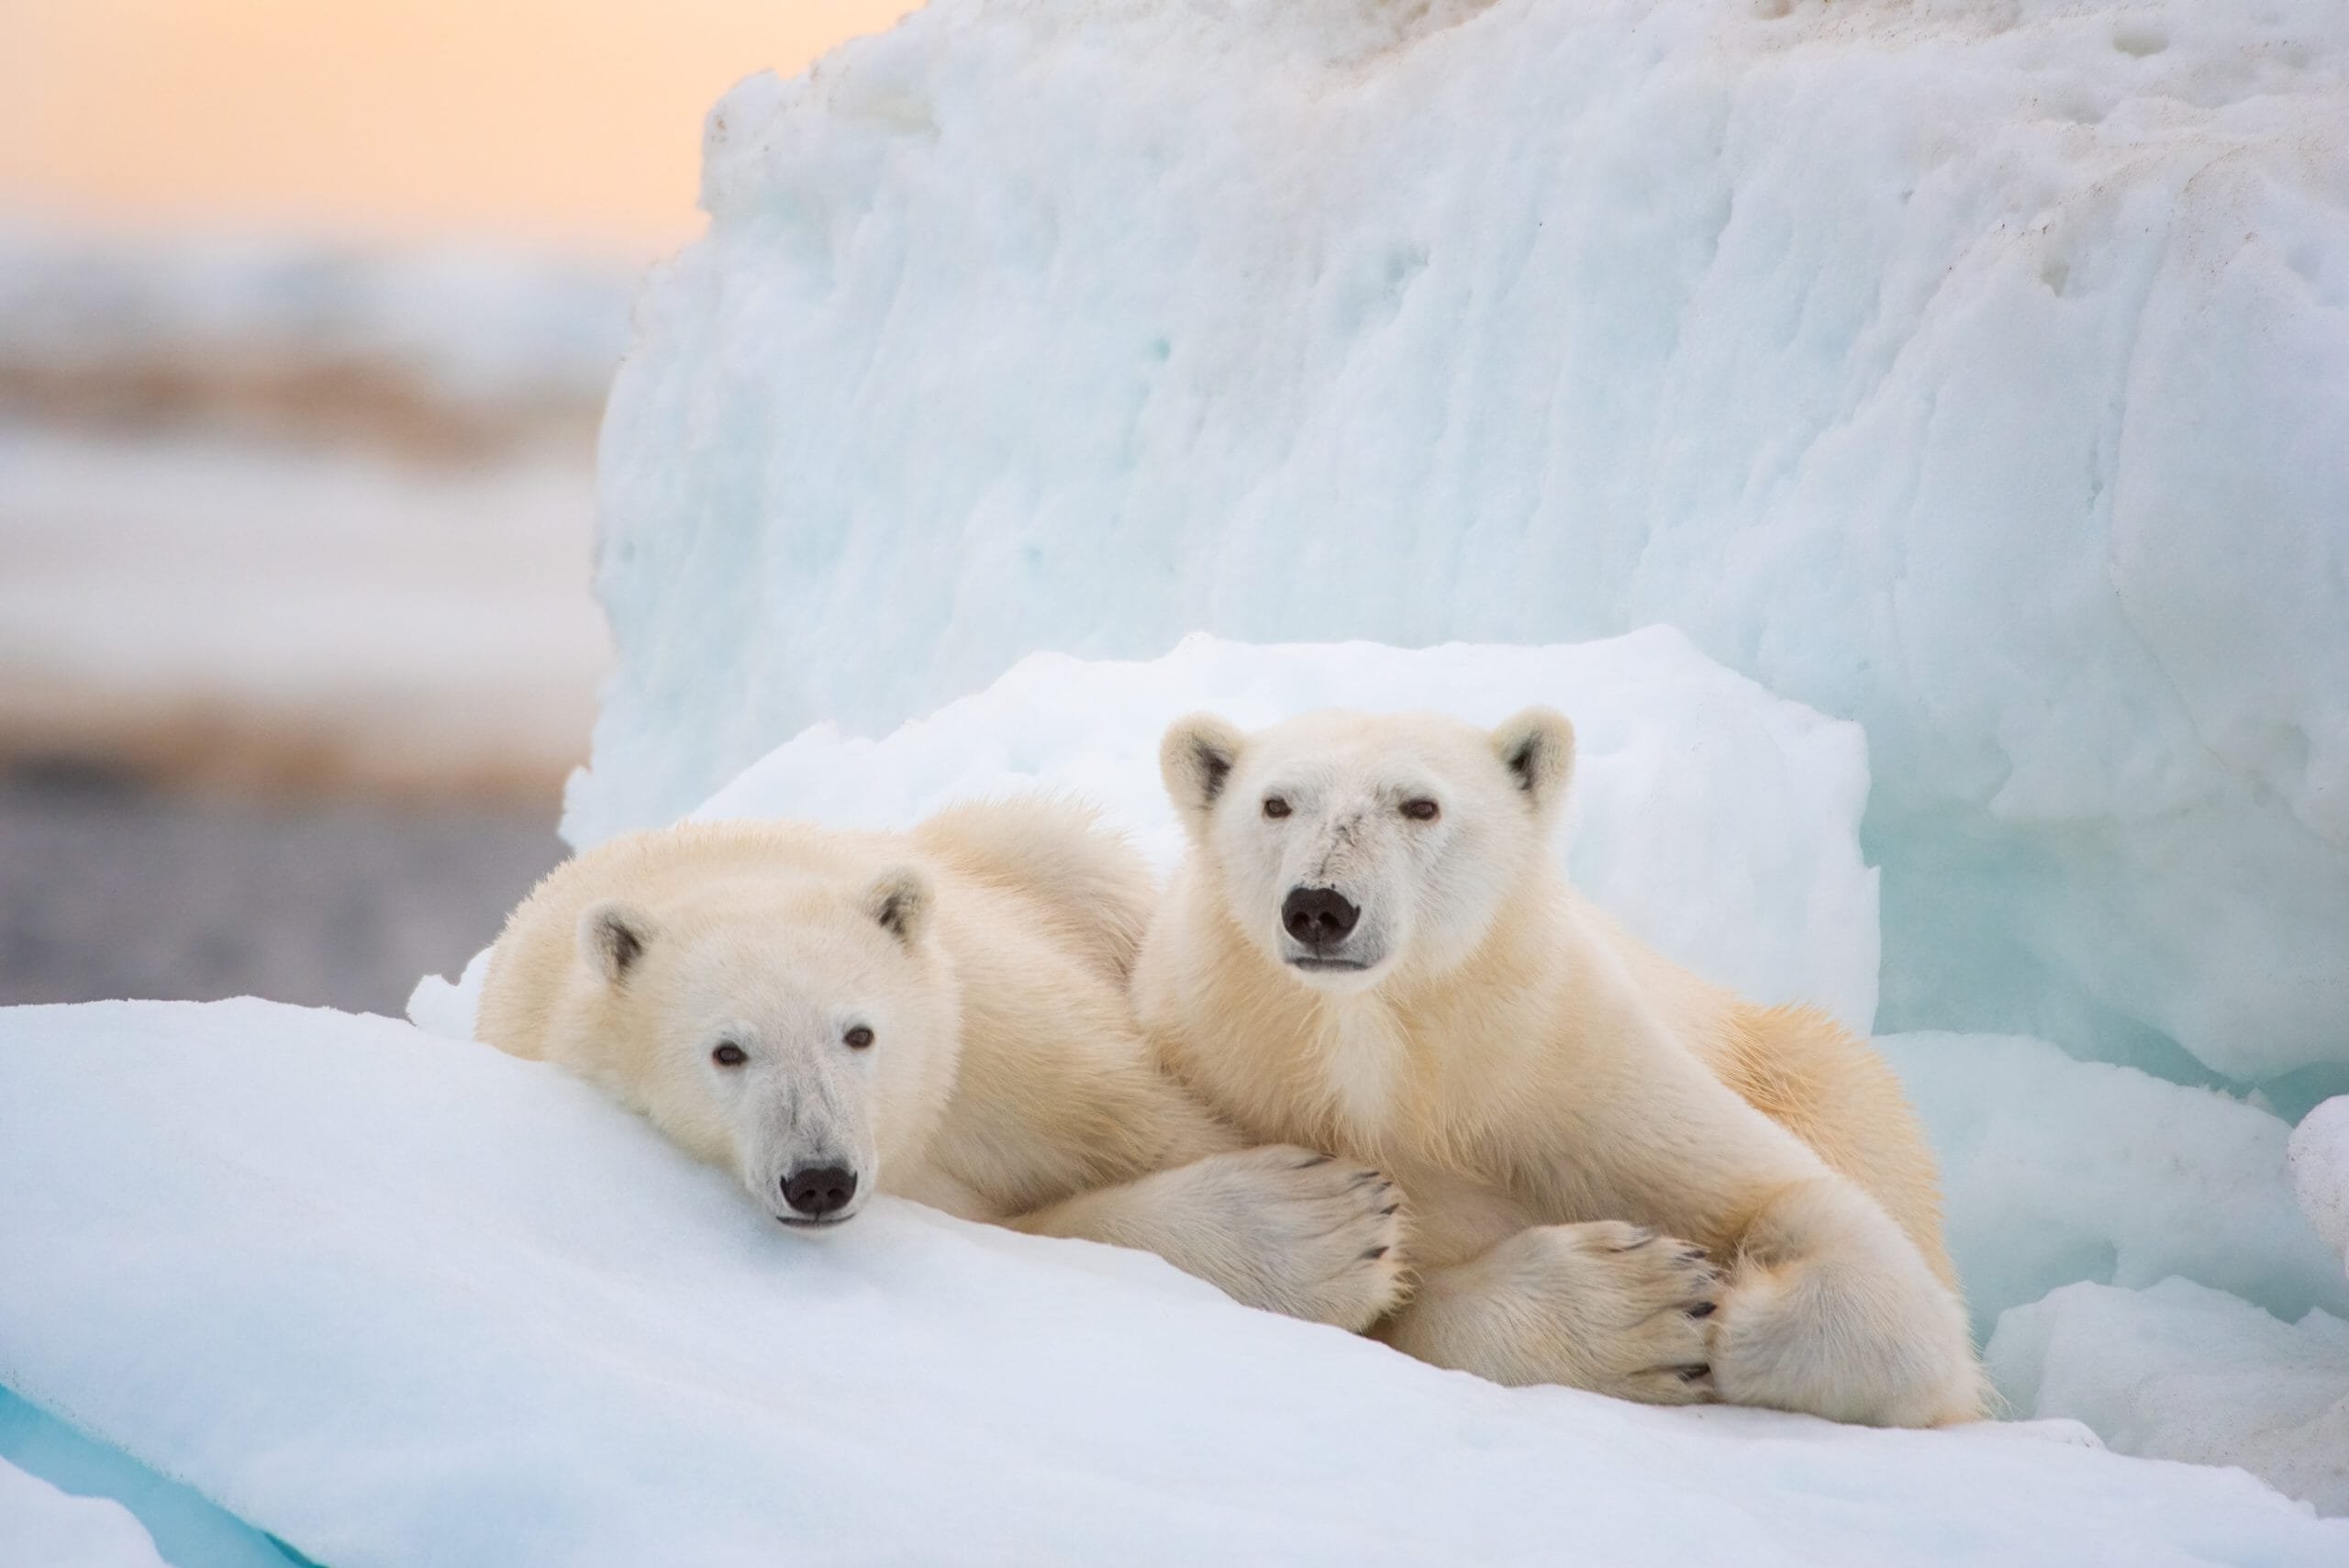 Diretores de A Ursa Polar” estão desenvolvendo filme na Amazônia - Vídeo  Dailymotion